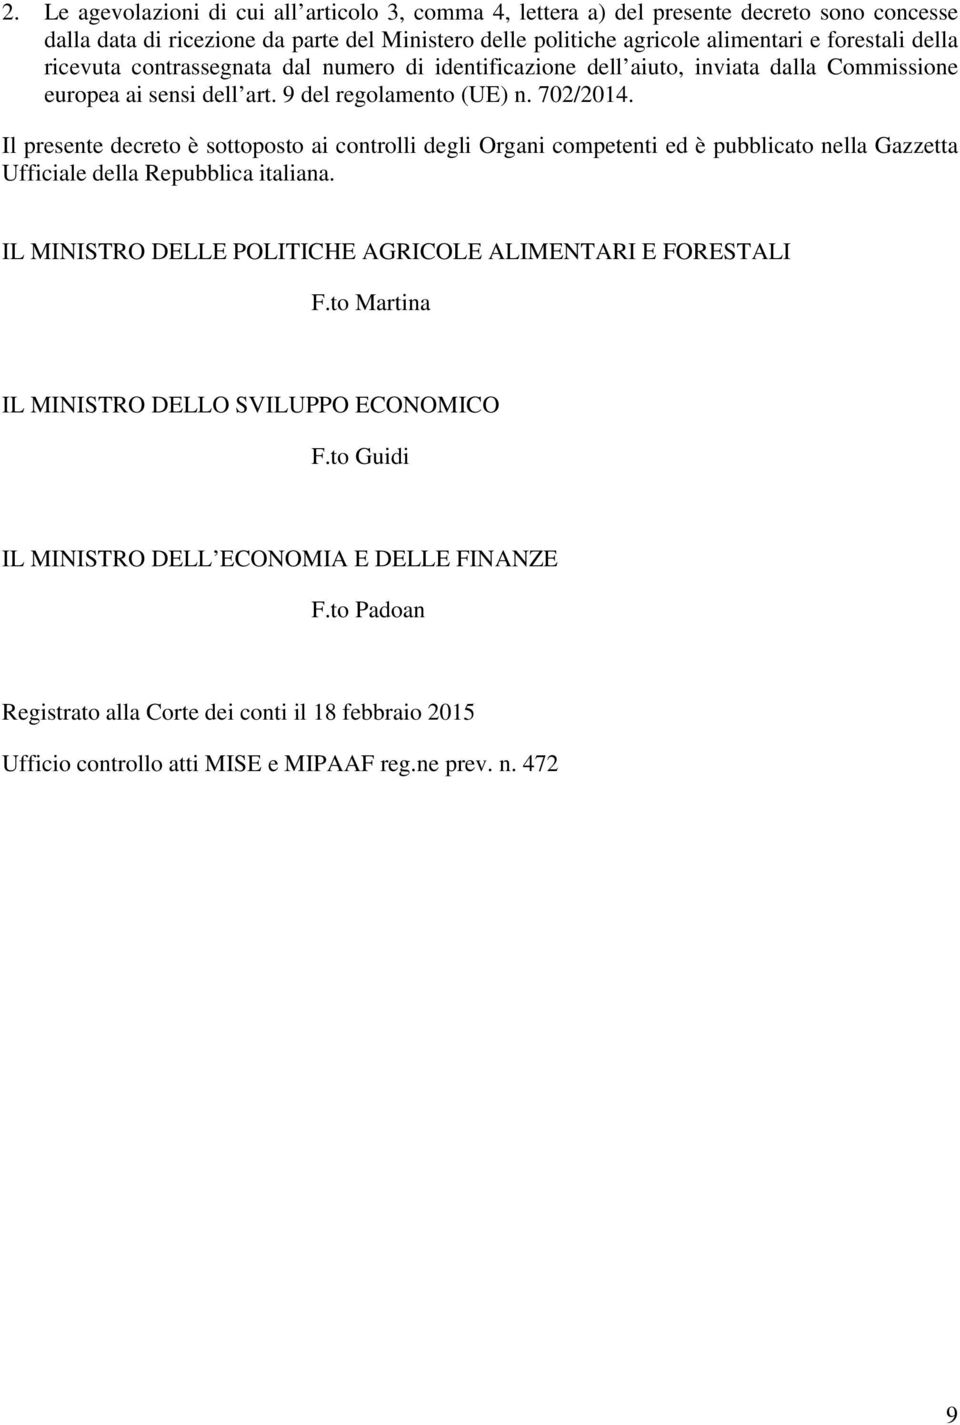 Il presente decreto è sottoposto ai controlli degli Organi competenti ed è pubblicato nella Gazzetta Ufficiale della Repubblica italiana.